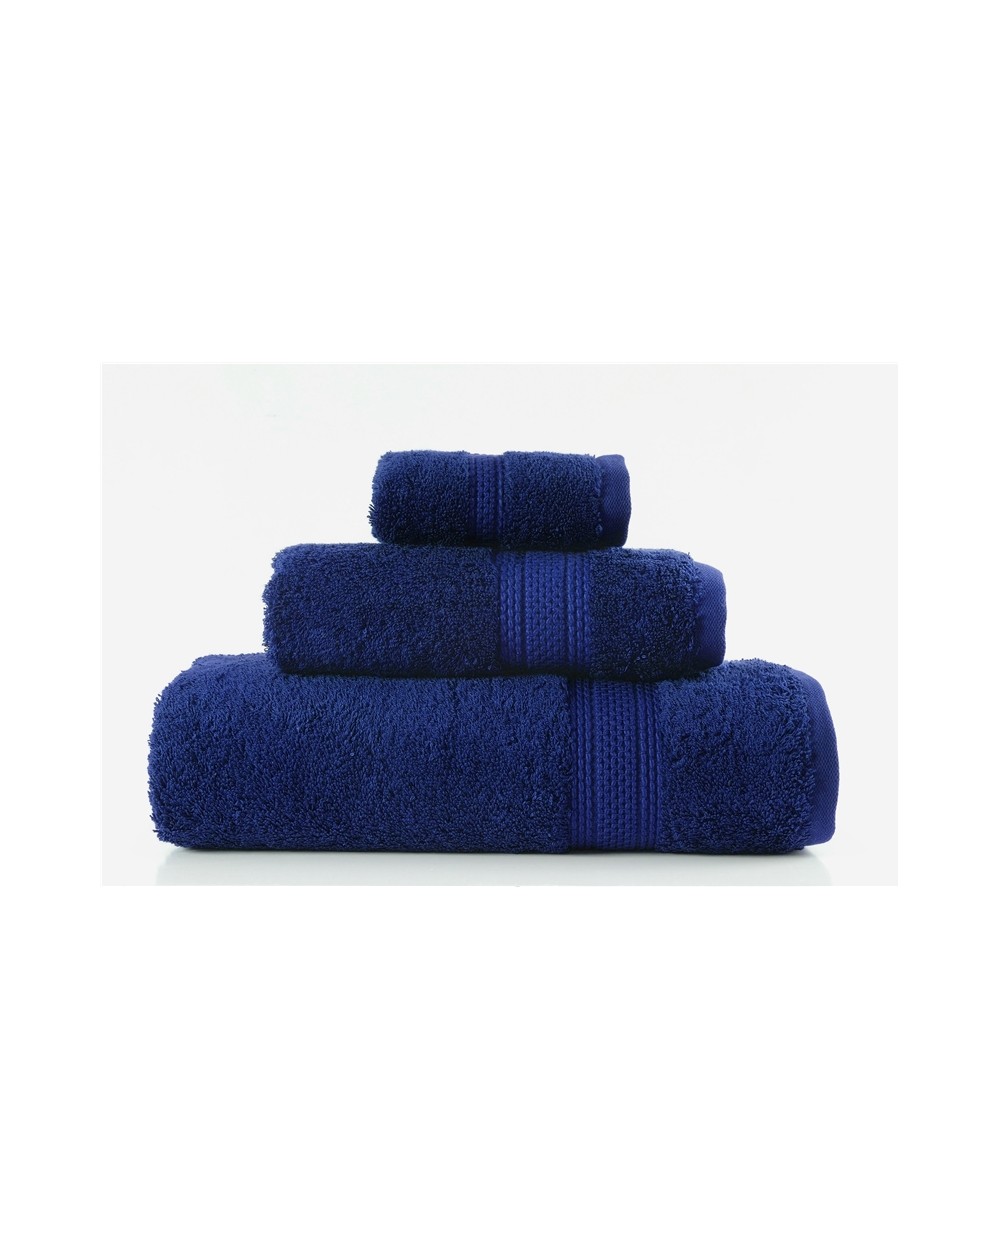 Ręcznik Egyptian Cotton bawełna egipska 30x50 navy blue